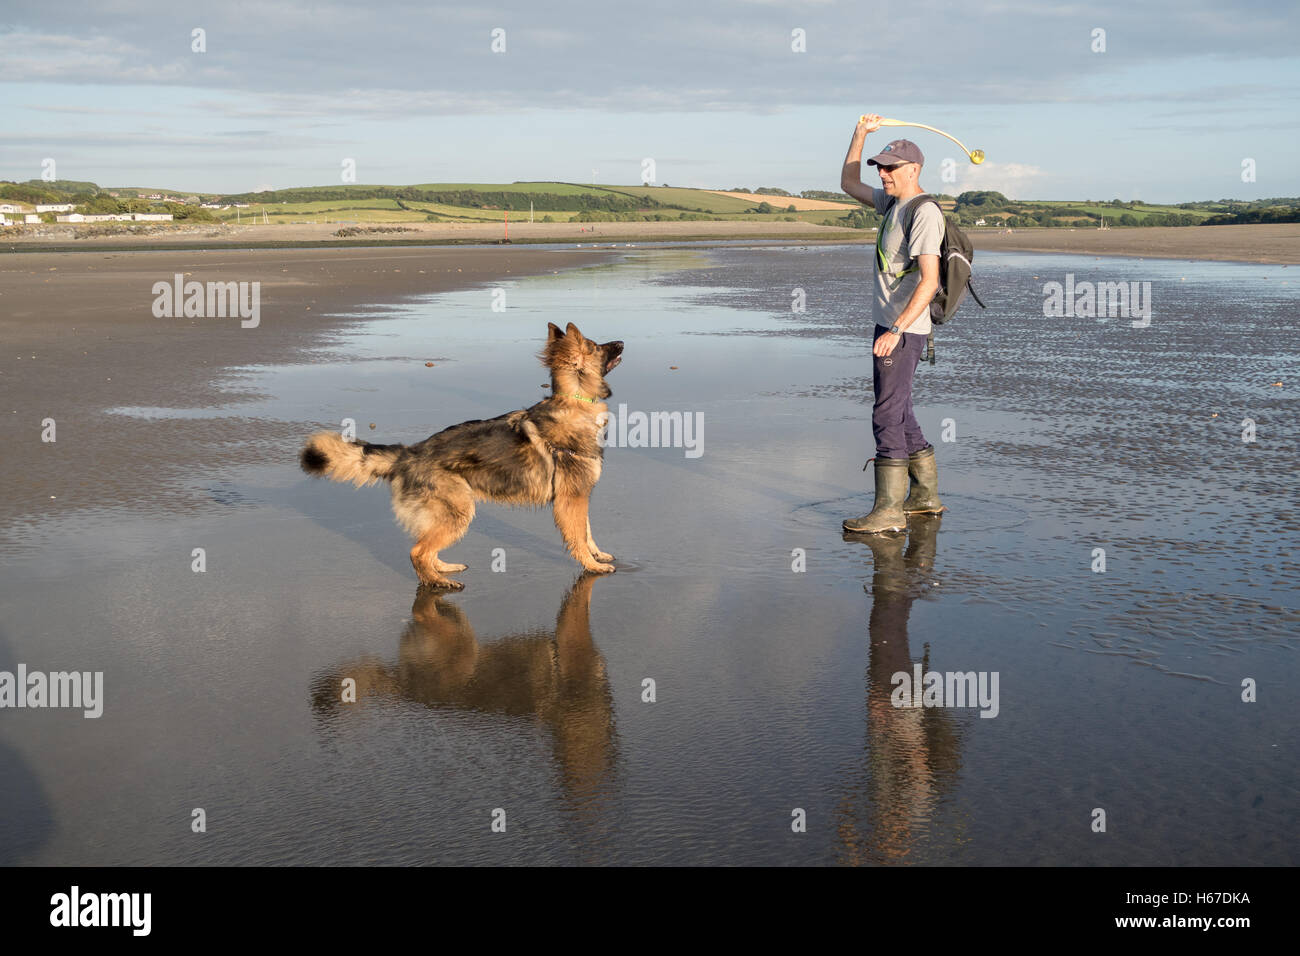 Homme lançant une boule pour son chien sur la plage. Ils ont du plaisir à jouer un jeu ensemble Banque D'Images